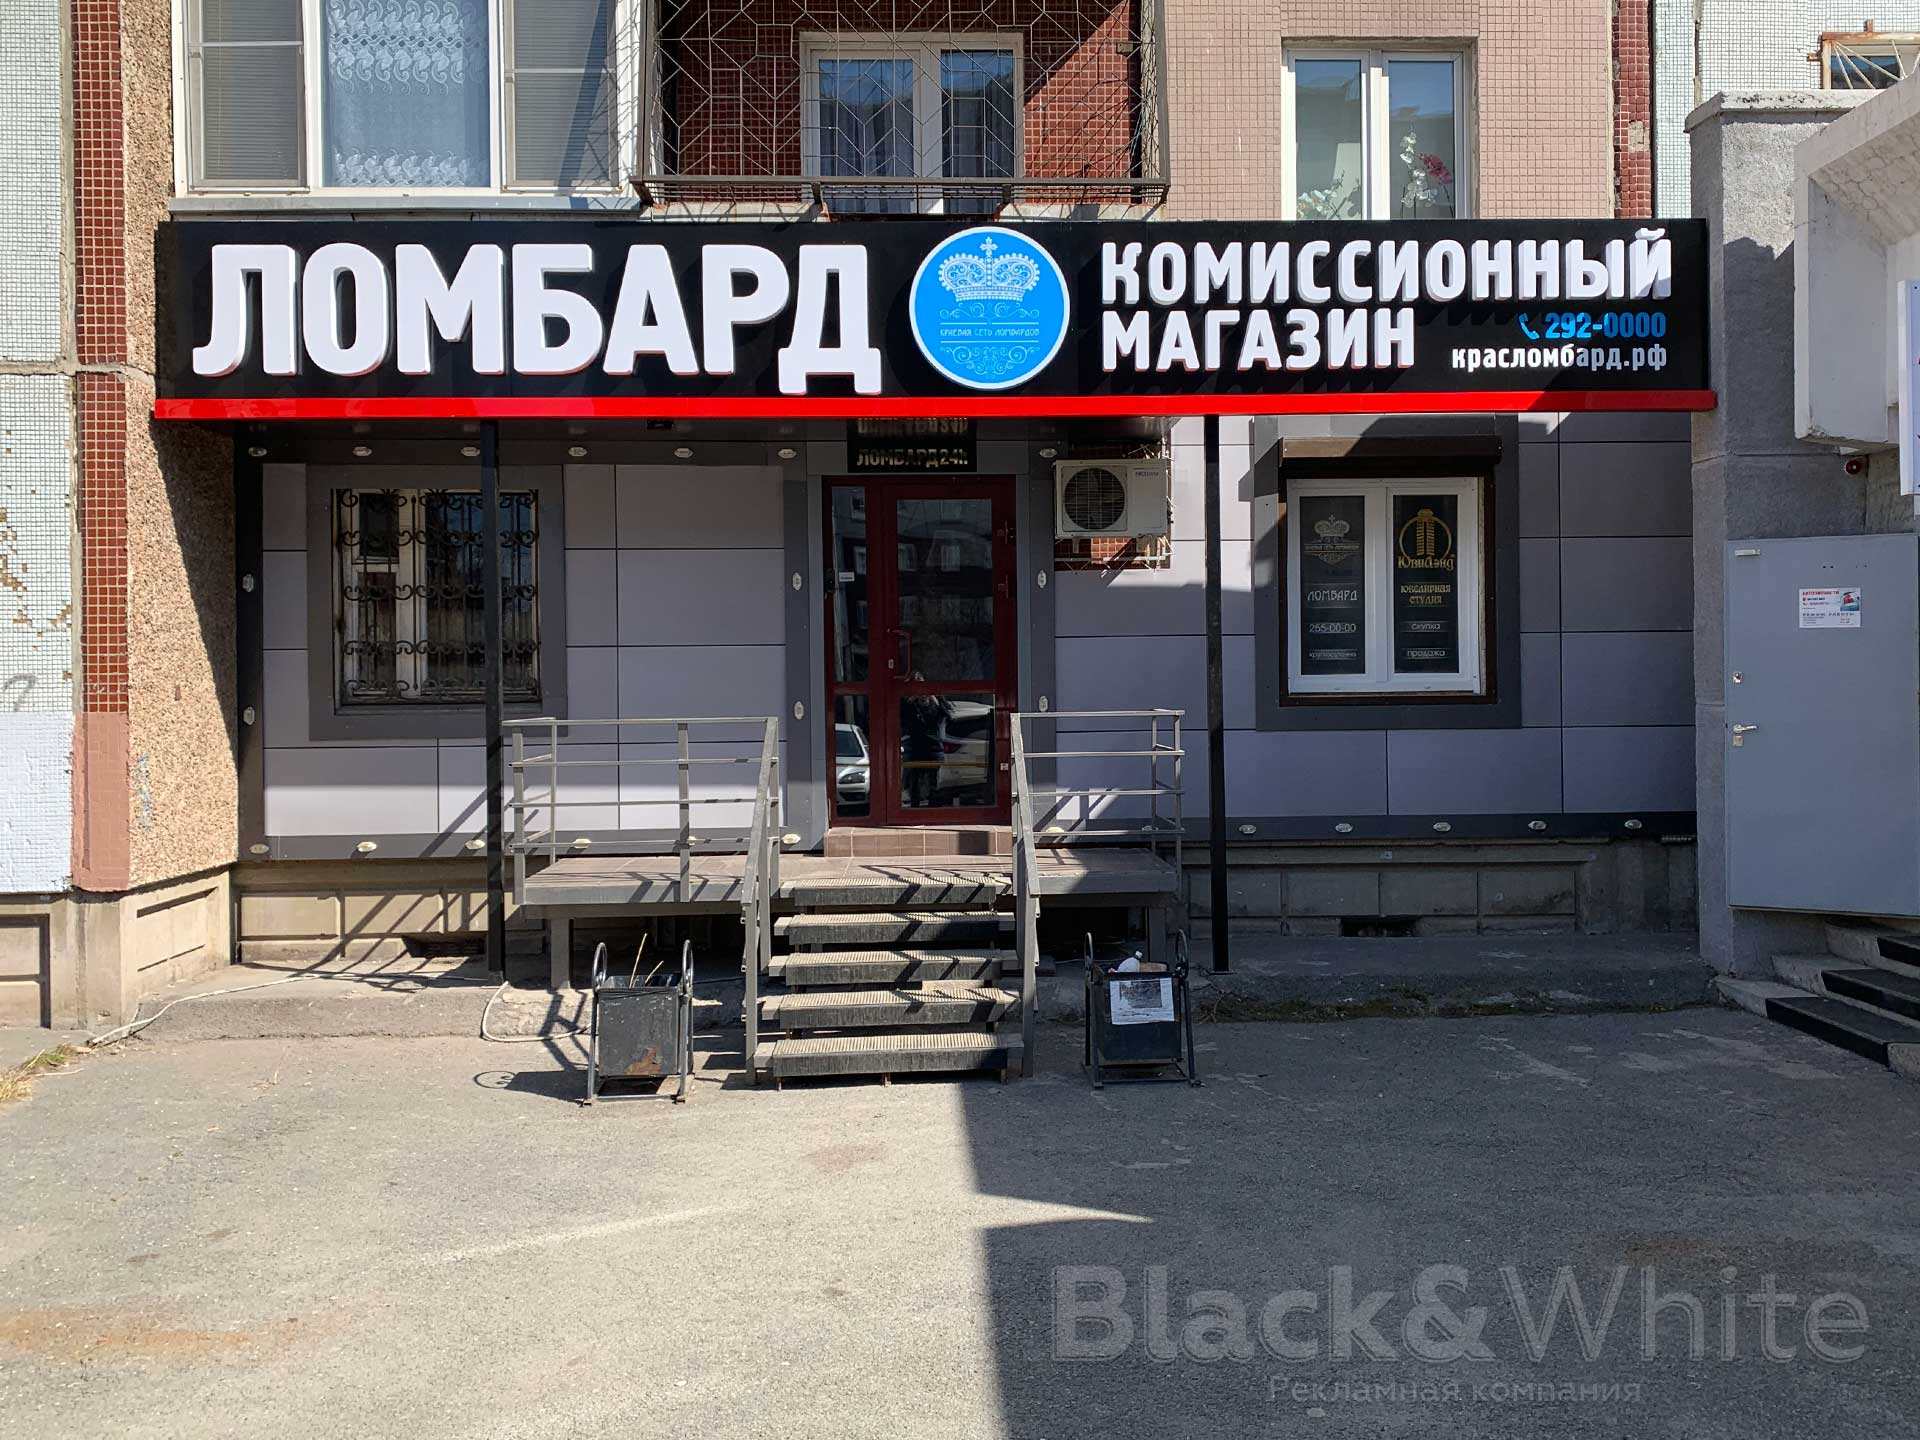 Световая-вывеска-для-ломбарда-с-световыми-объёмными-буквами-в-Красноярске-Black&White-bw.jpg